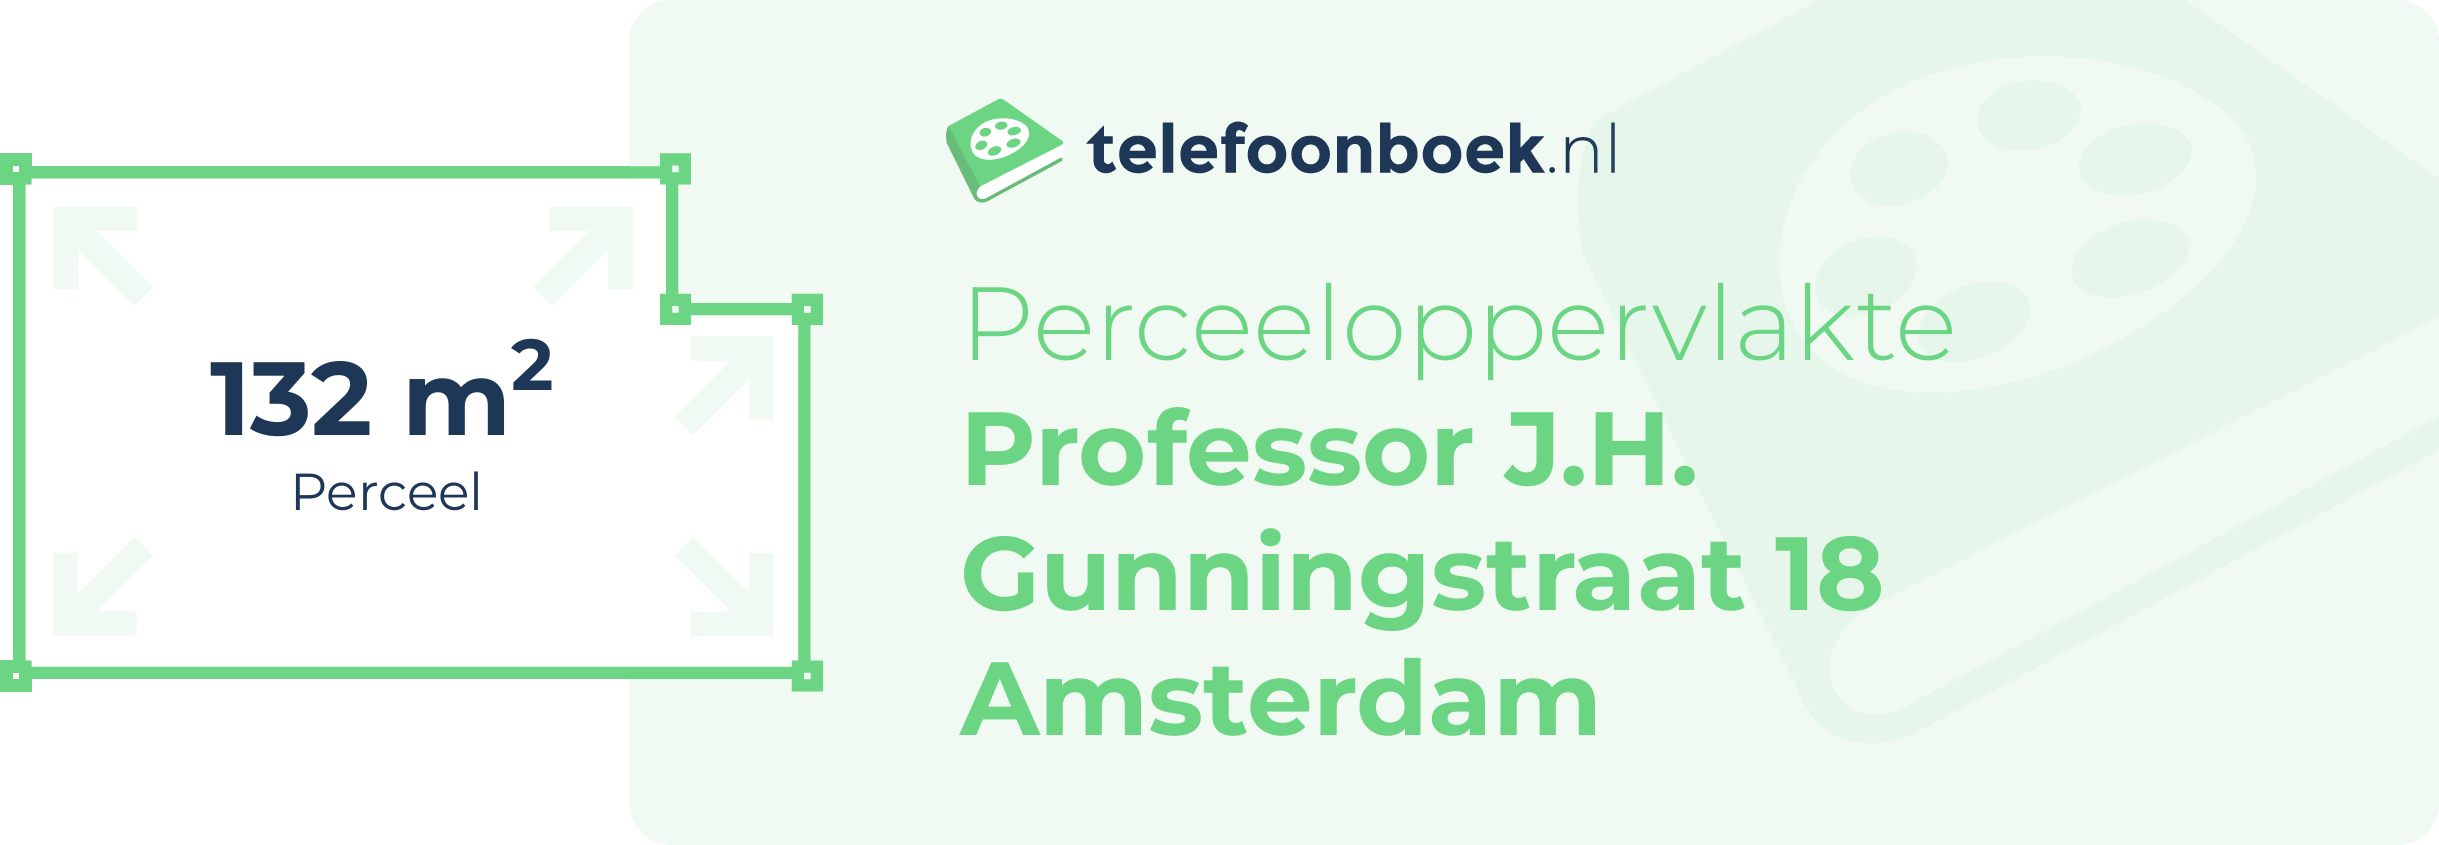 Perceeloppervlakte Professor J.H. Gunningstraat 18 Amsterdam